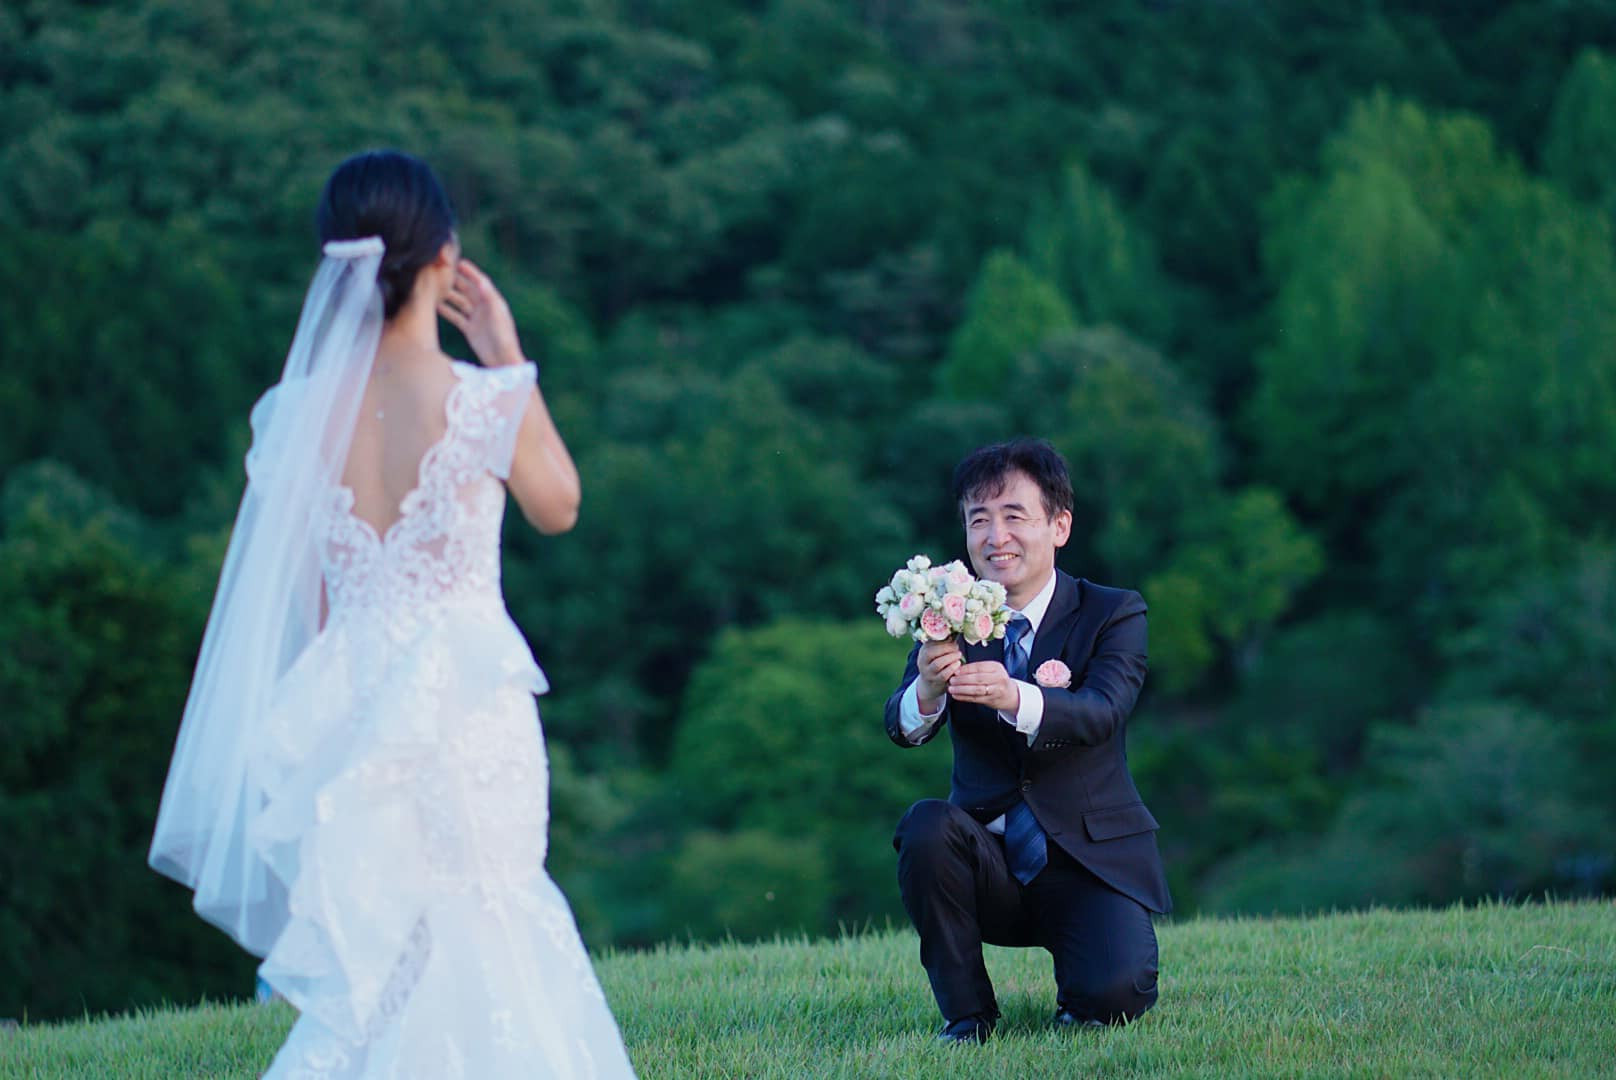 Chồng Nhật ngại tạo dáng, vợ Việt chờ 5 năm chụp ảnh cưới tuyệt đẹp 0 đồng - Ảnh 5.